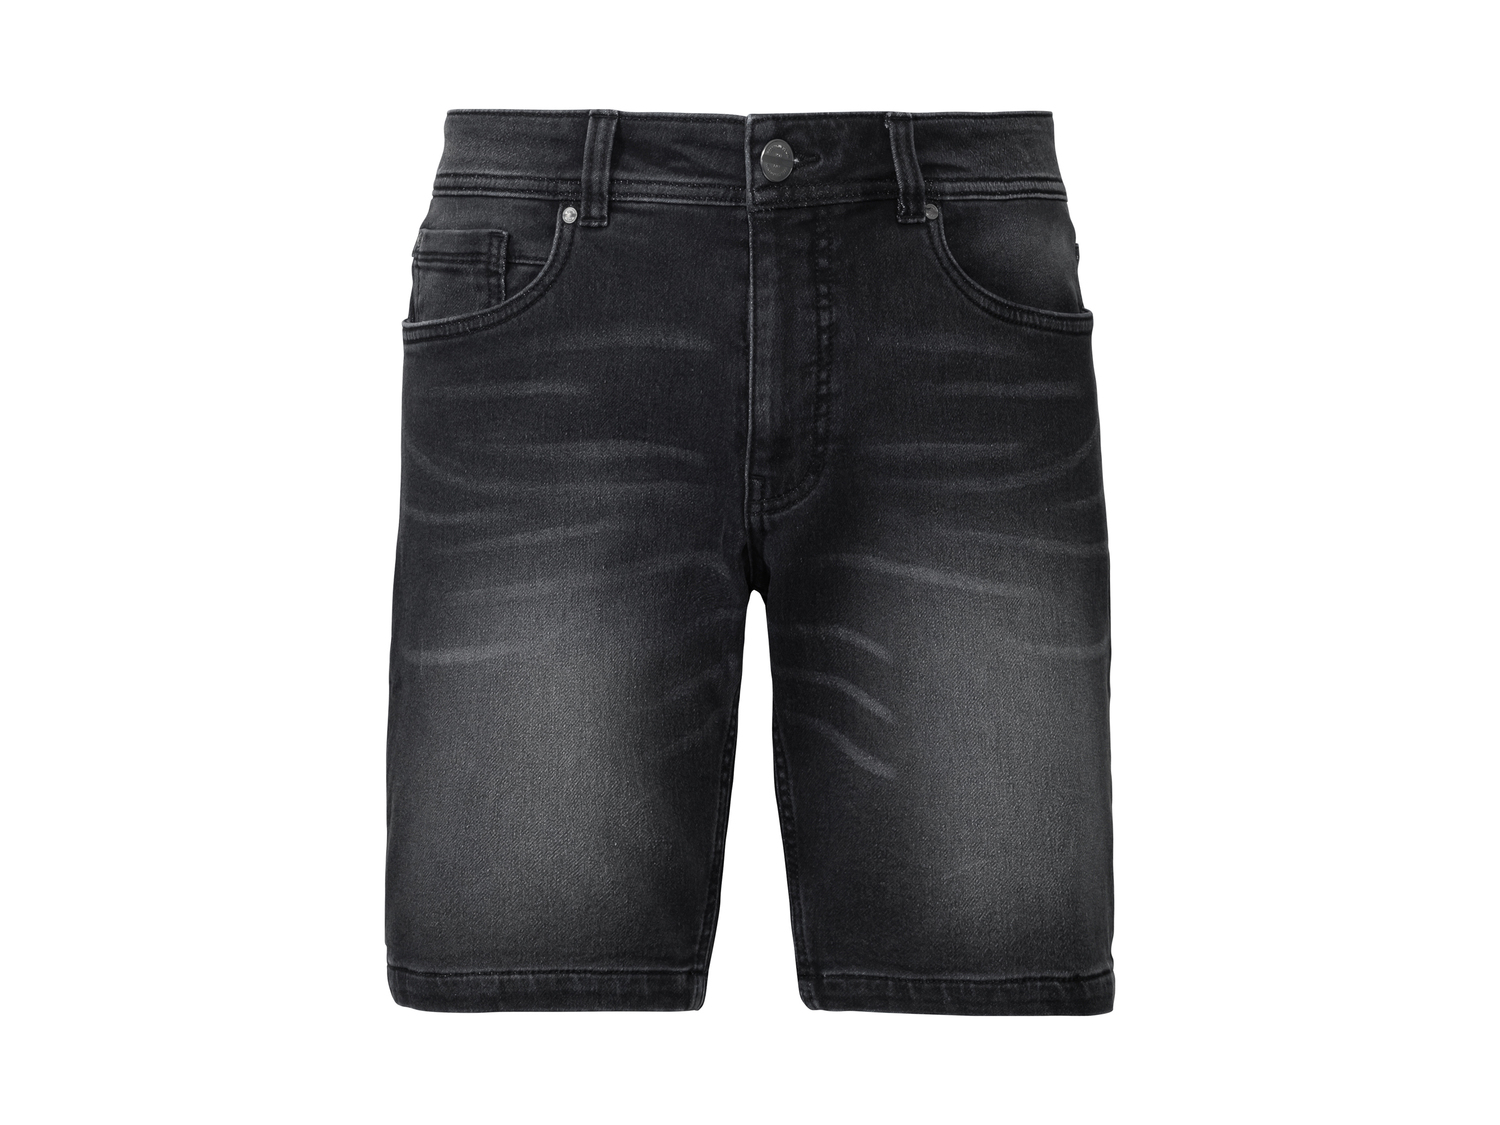 Bermuda in jeans da uomo Livergy, prezzo 9.99 &#8364; 
Misure: 46-56
Taglie ...